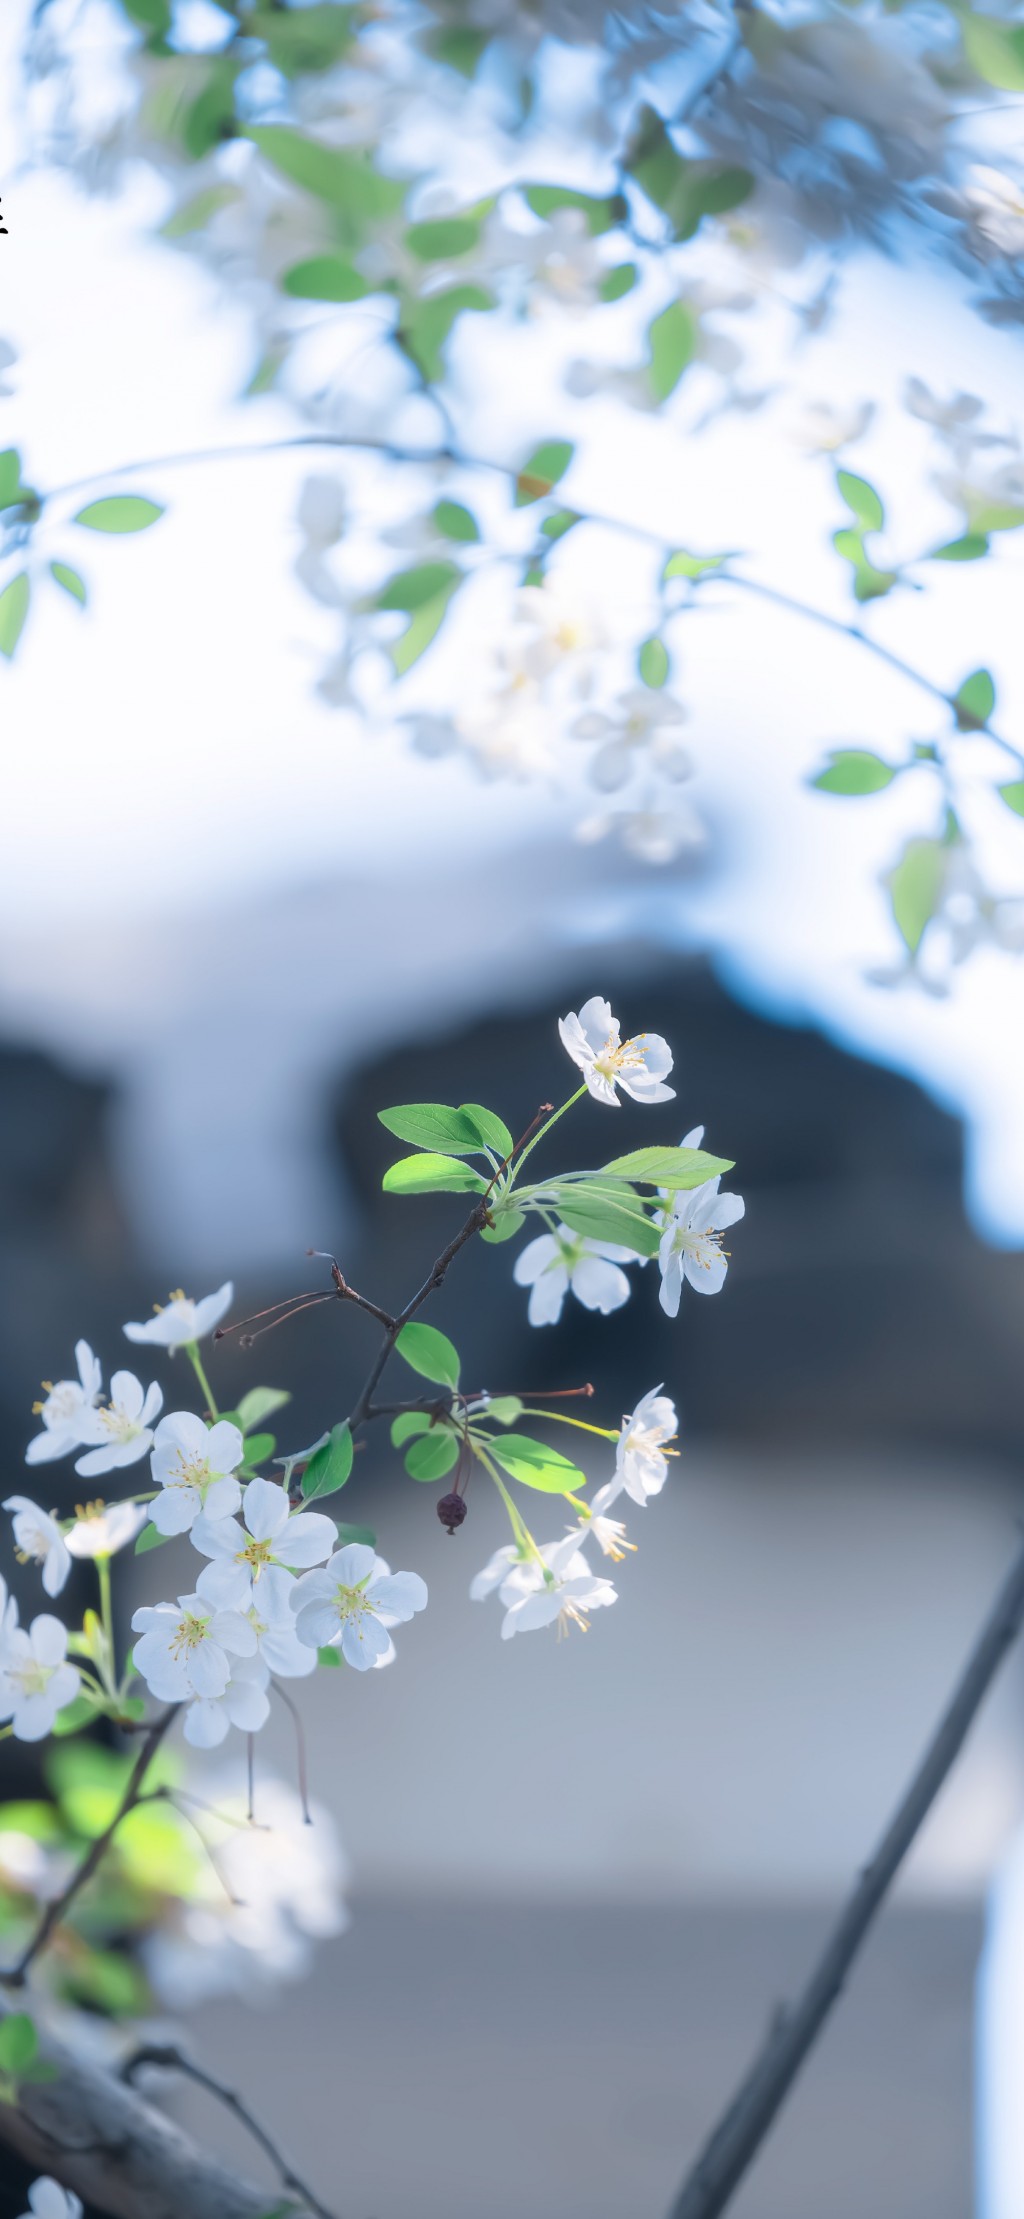 湖北海棠洁白色清新花朵手机壁纸